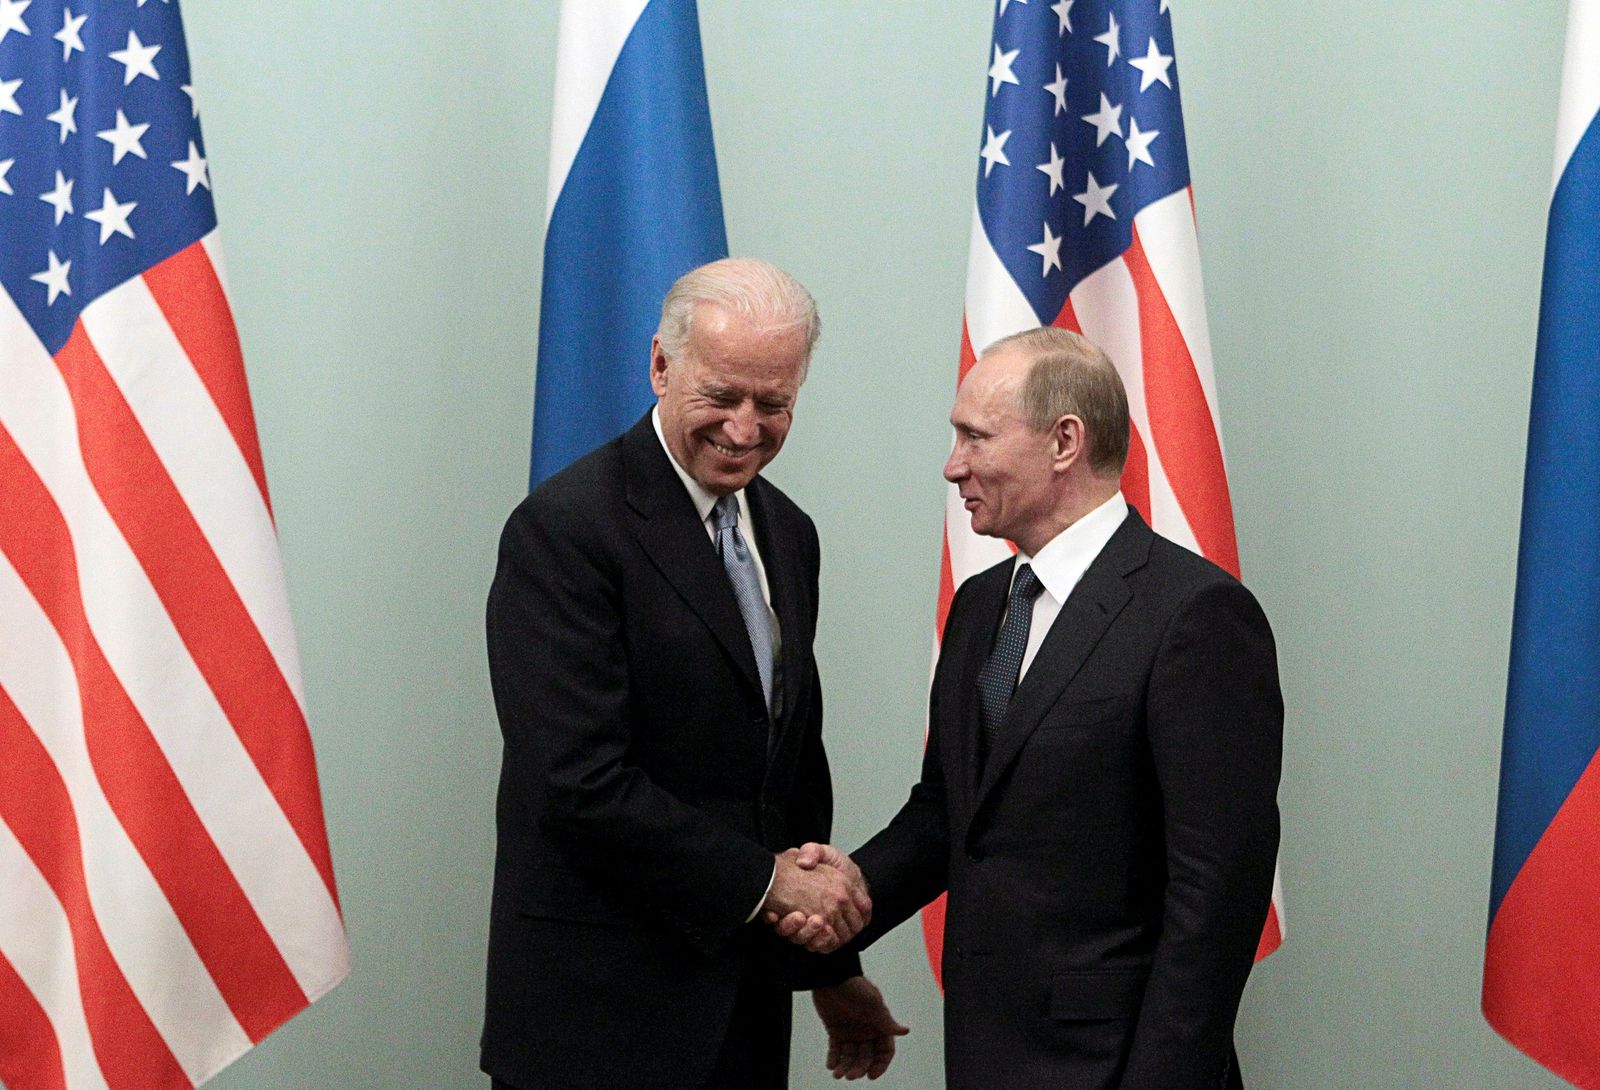 فلاديمير بوتين عندما كان رئيس وزراء روسيا خلال لقاء في موسكو مع جو بايدن نائب الرئيس الأميركي باراك أوباما آنذاك- 10 مارس 2011 - REUTERS